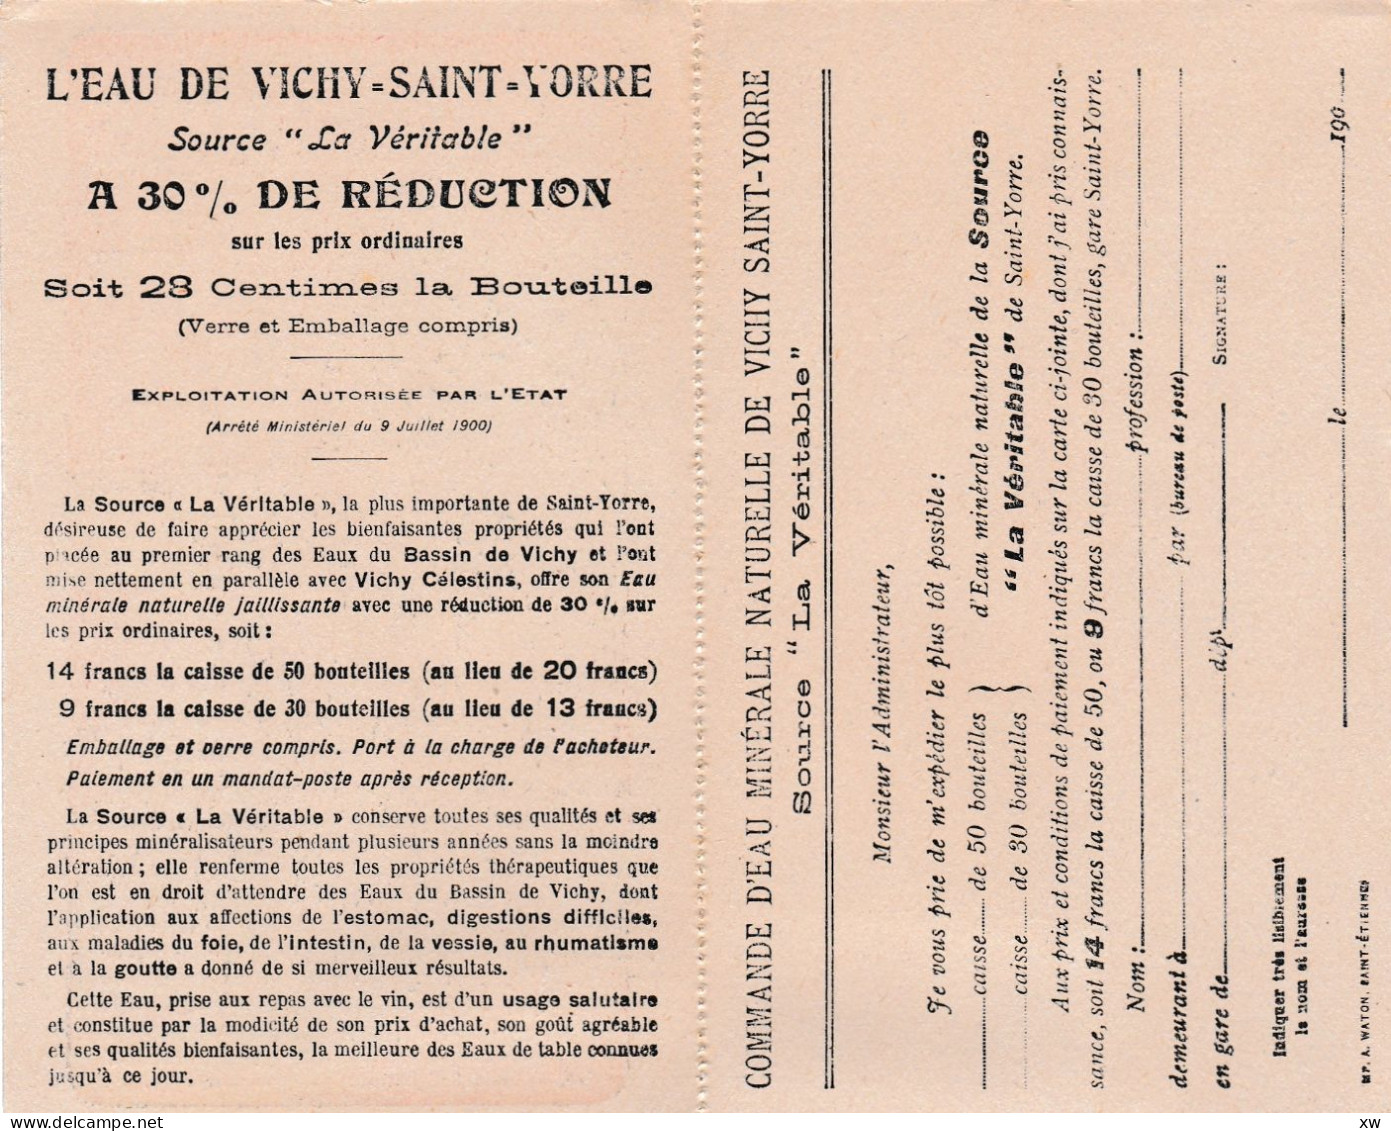 VICHY -03- SOURCE La Véritable Du Bassin De Vichy à St-Yorre - Carte Réponse Détachable Pour Commander  -19-05-24 - Saint-Cast-le-Guildo